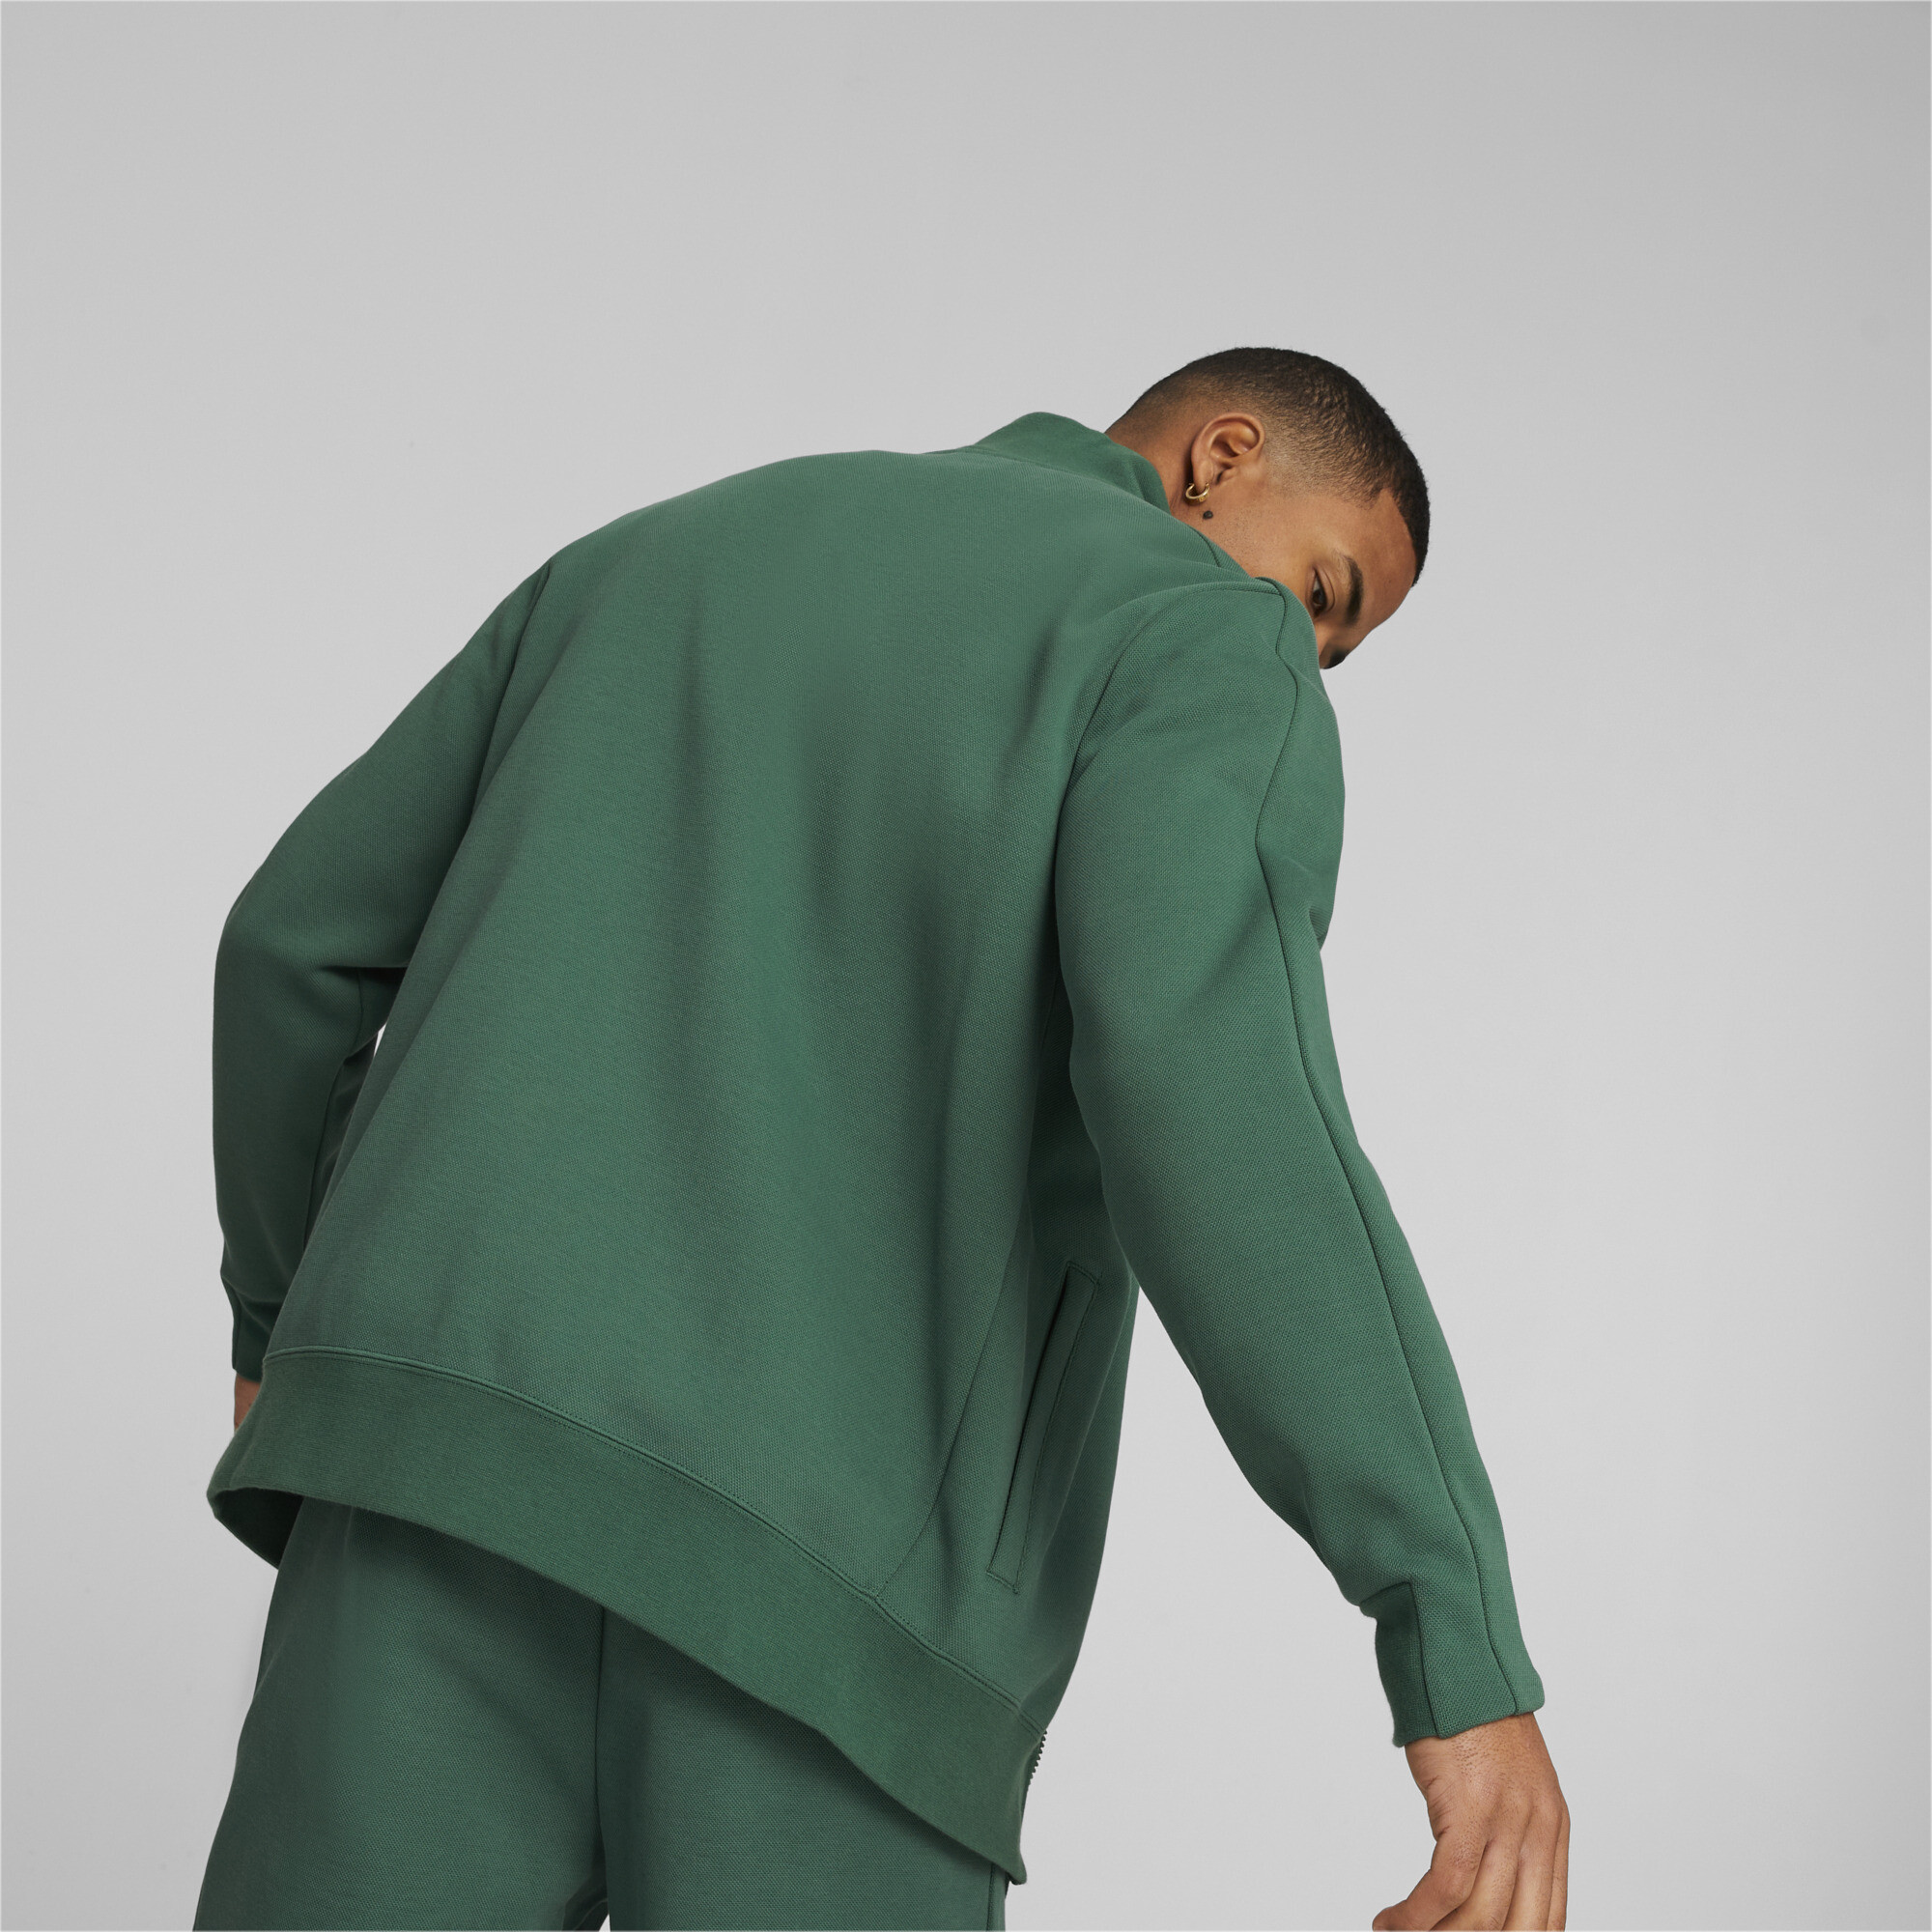 Men's PUMA T7 Track Jacket Men In Green, Size Medium